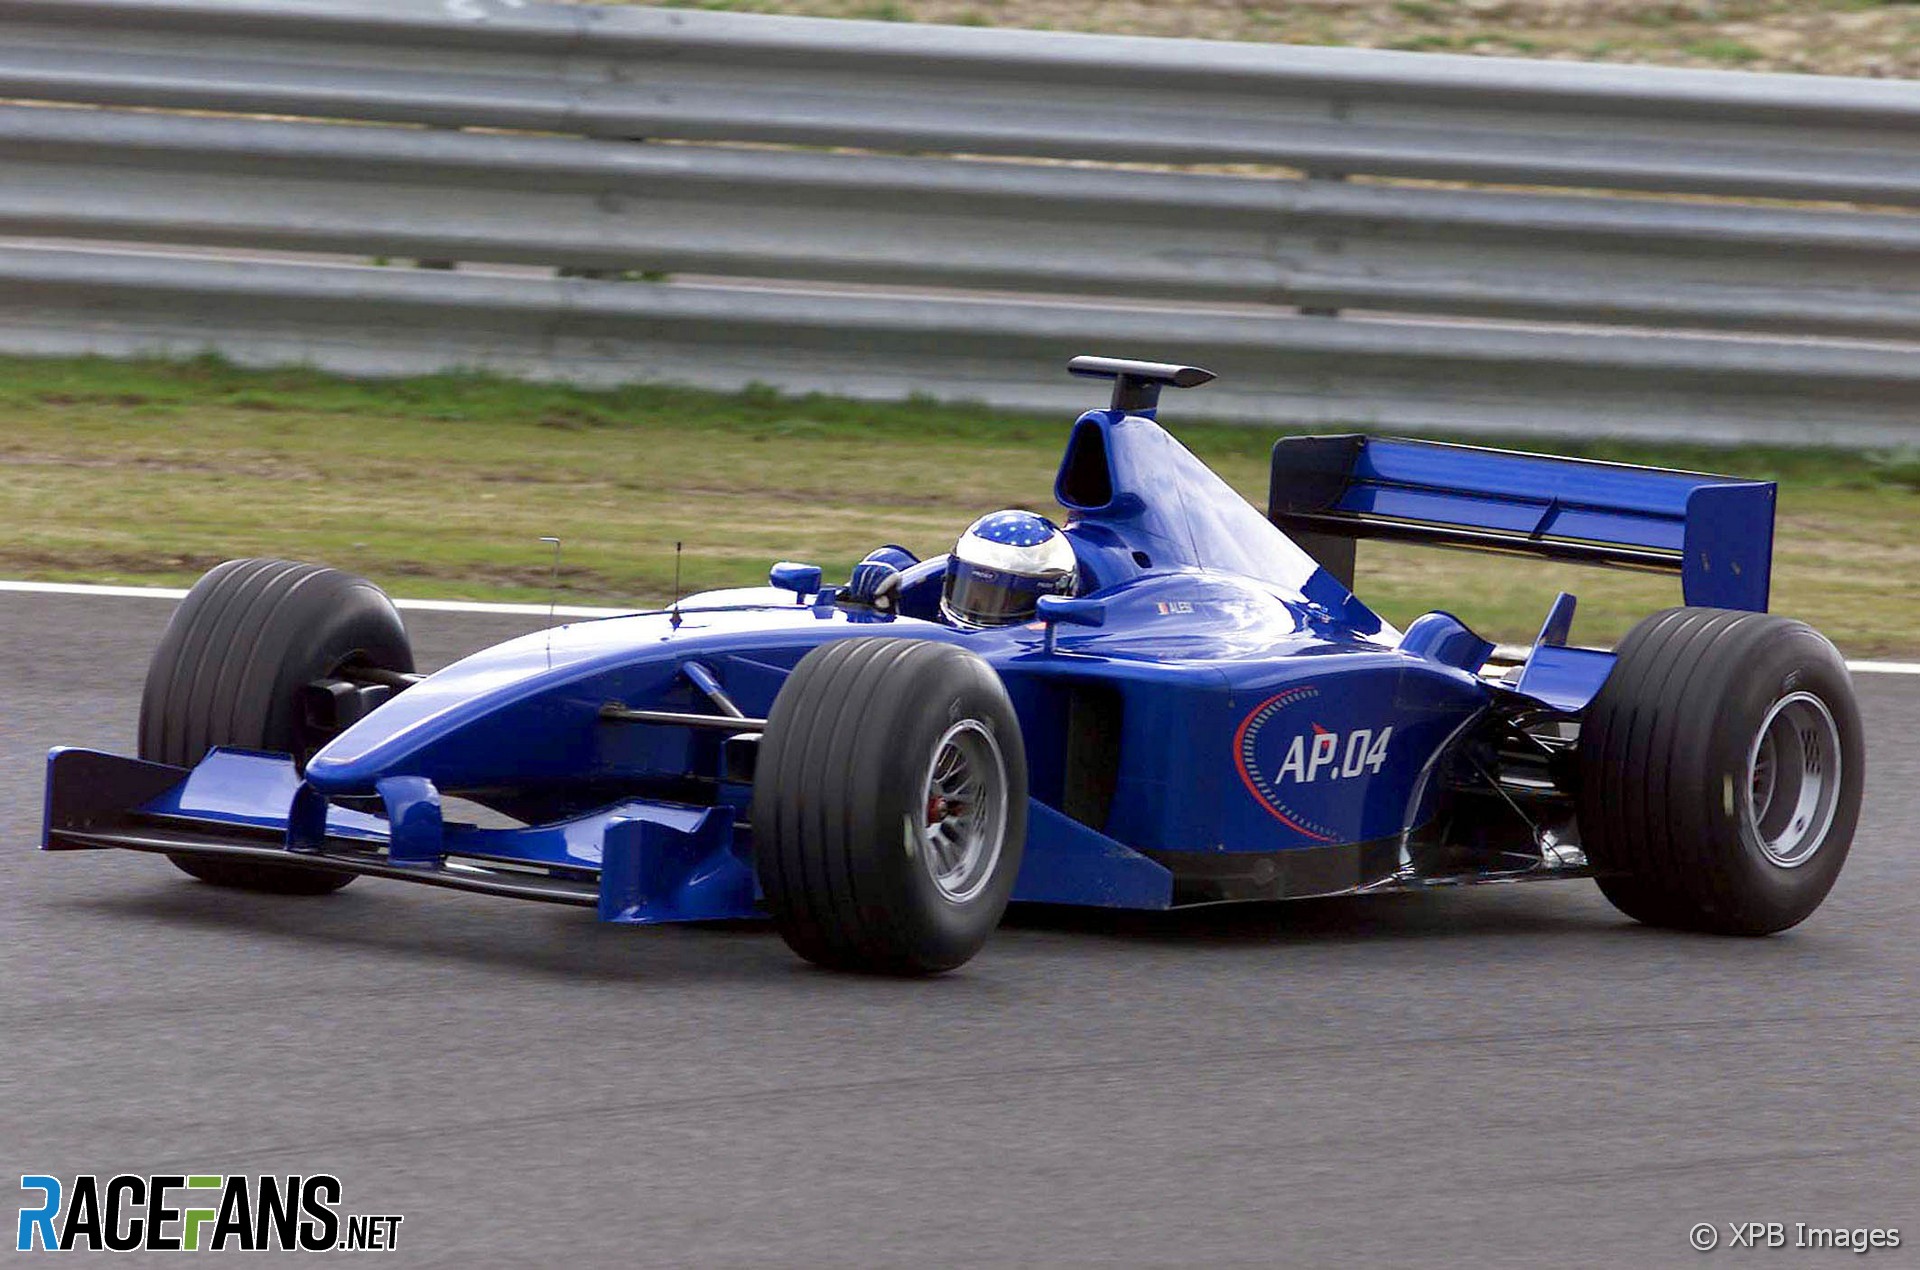 Jean Alesi, Prost, Estoril, 2001